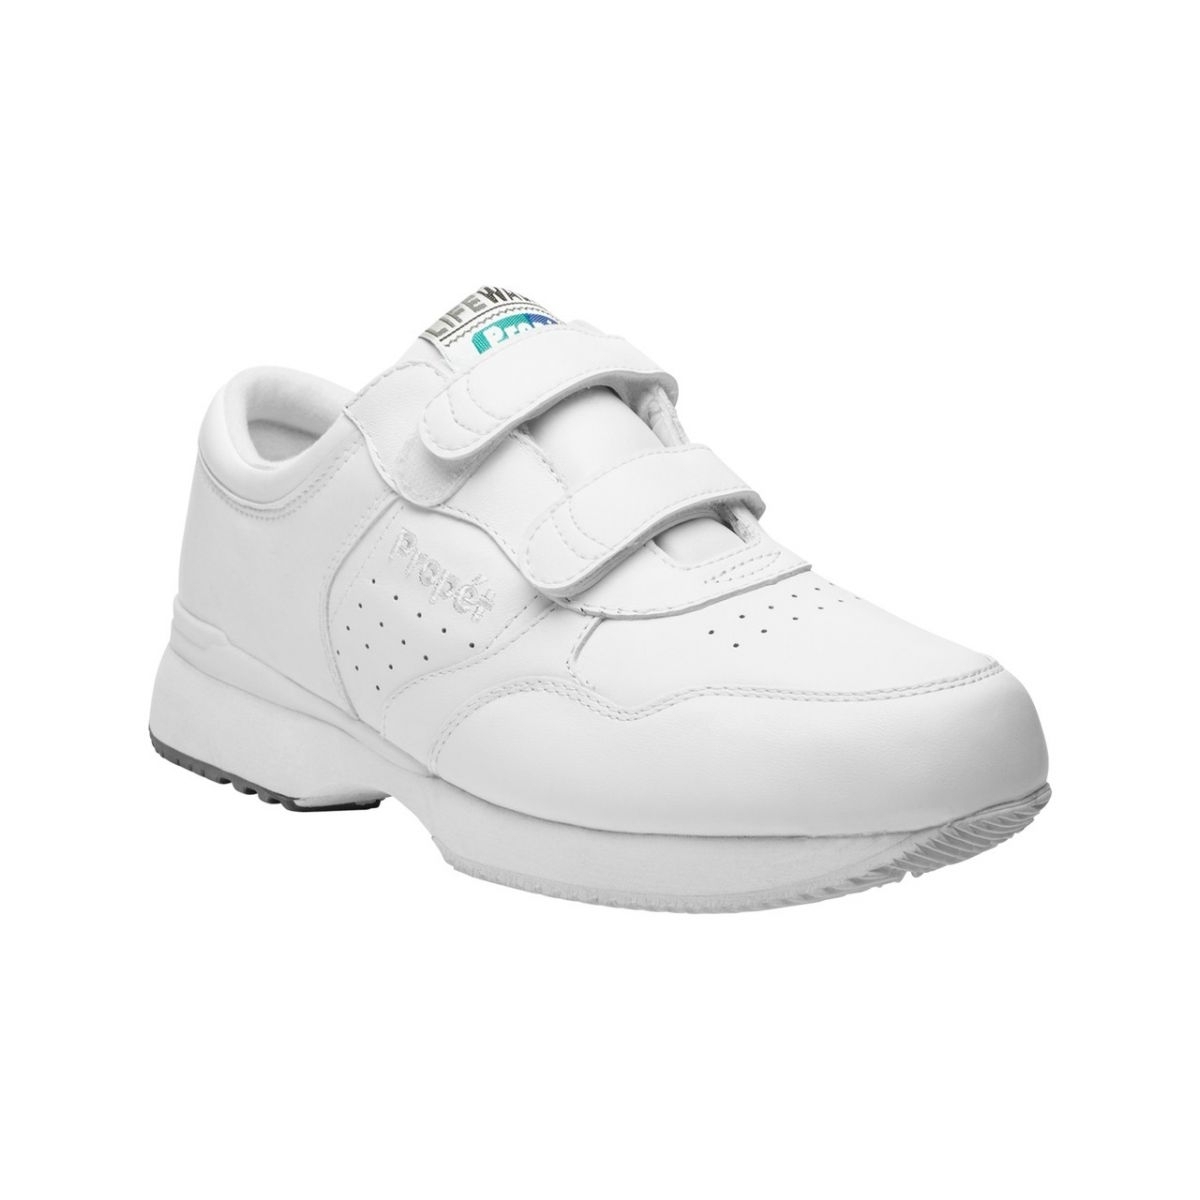 PropÃ©t Mens LifeWalker Strap Walking Walking Sneakers Athletic Shoes - Black 7 BLACK - WHITE, 14-3E